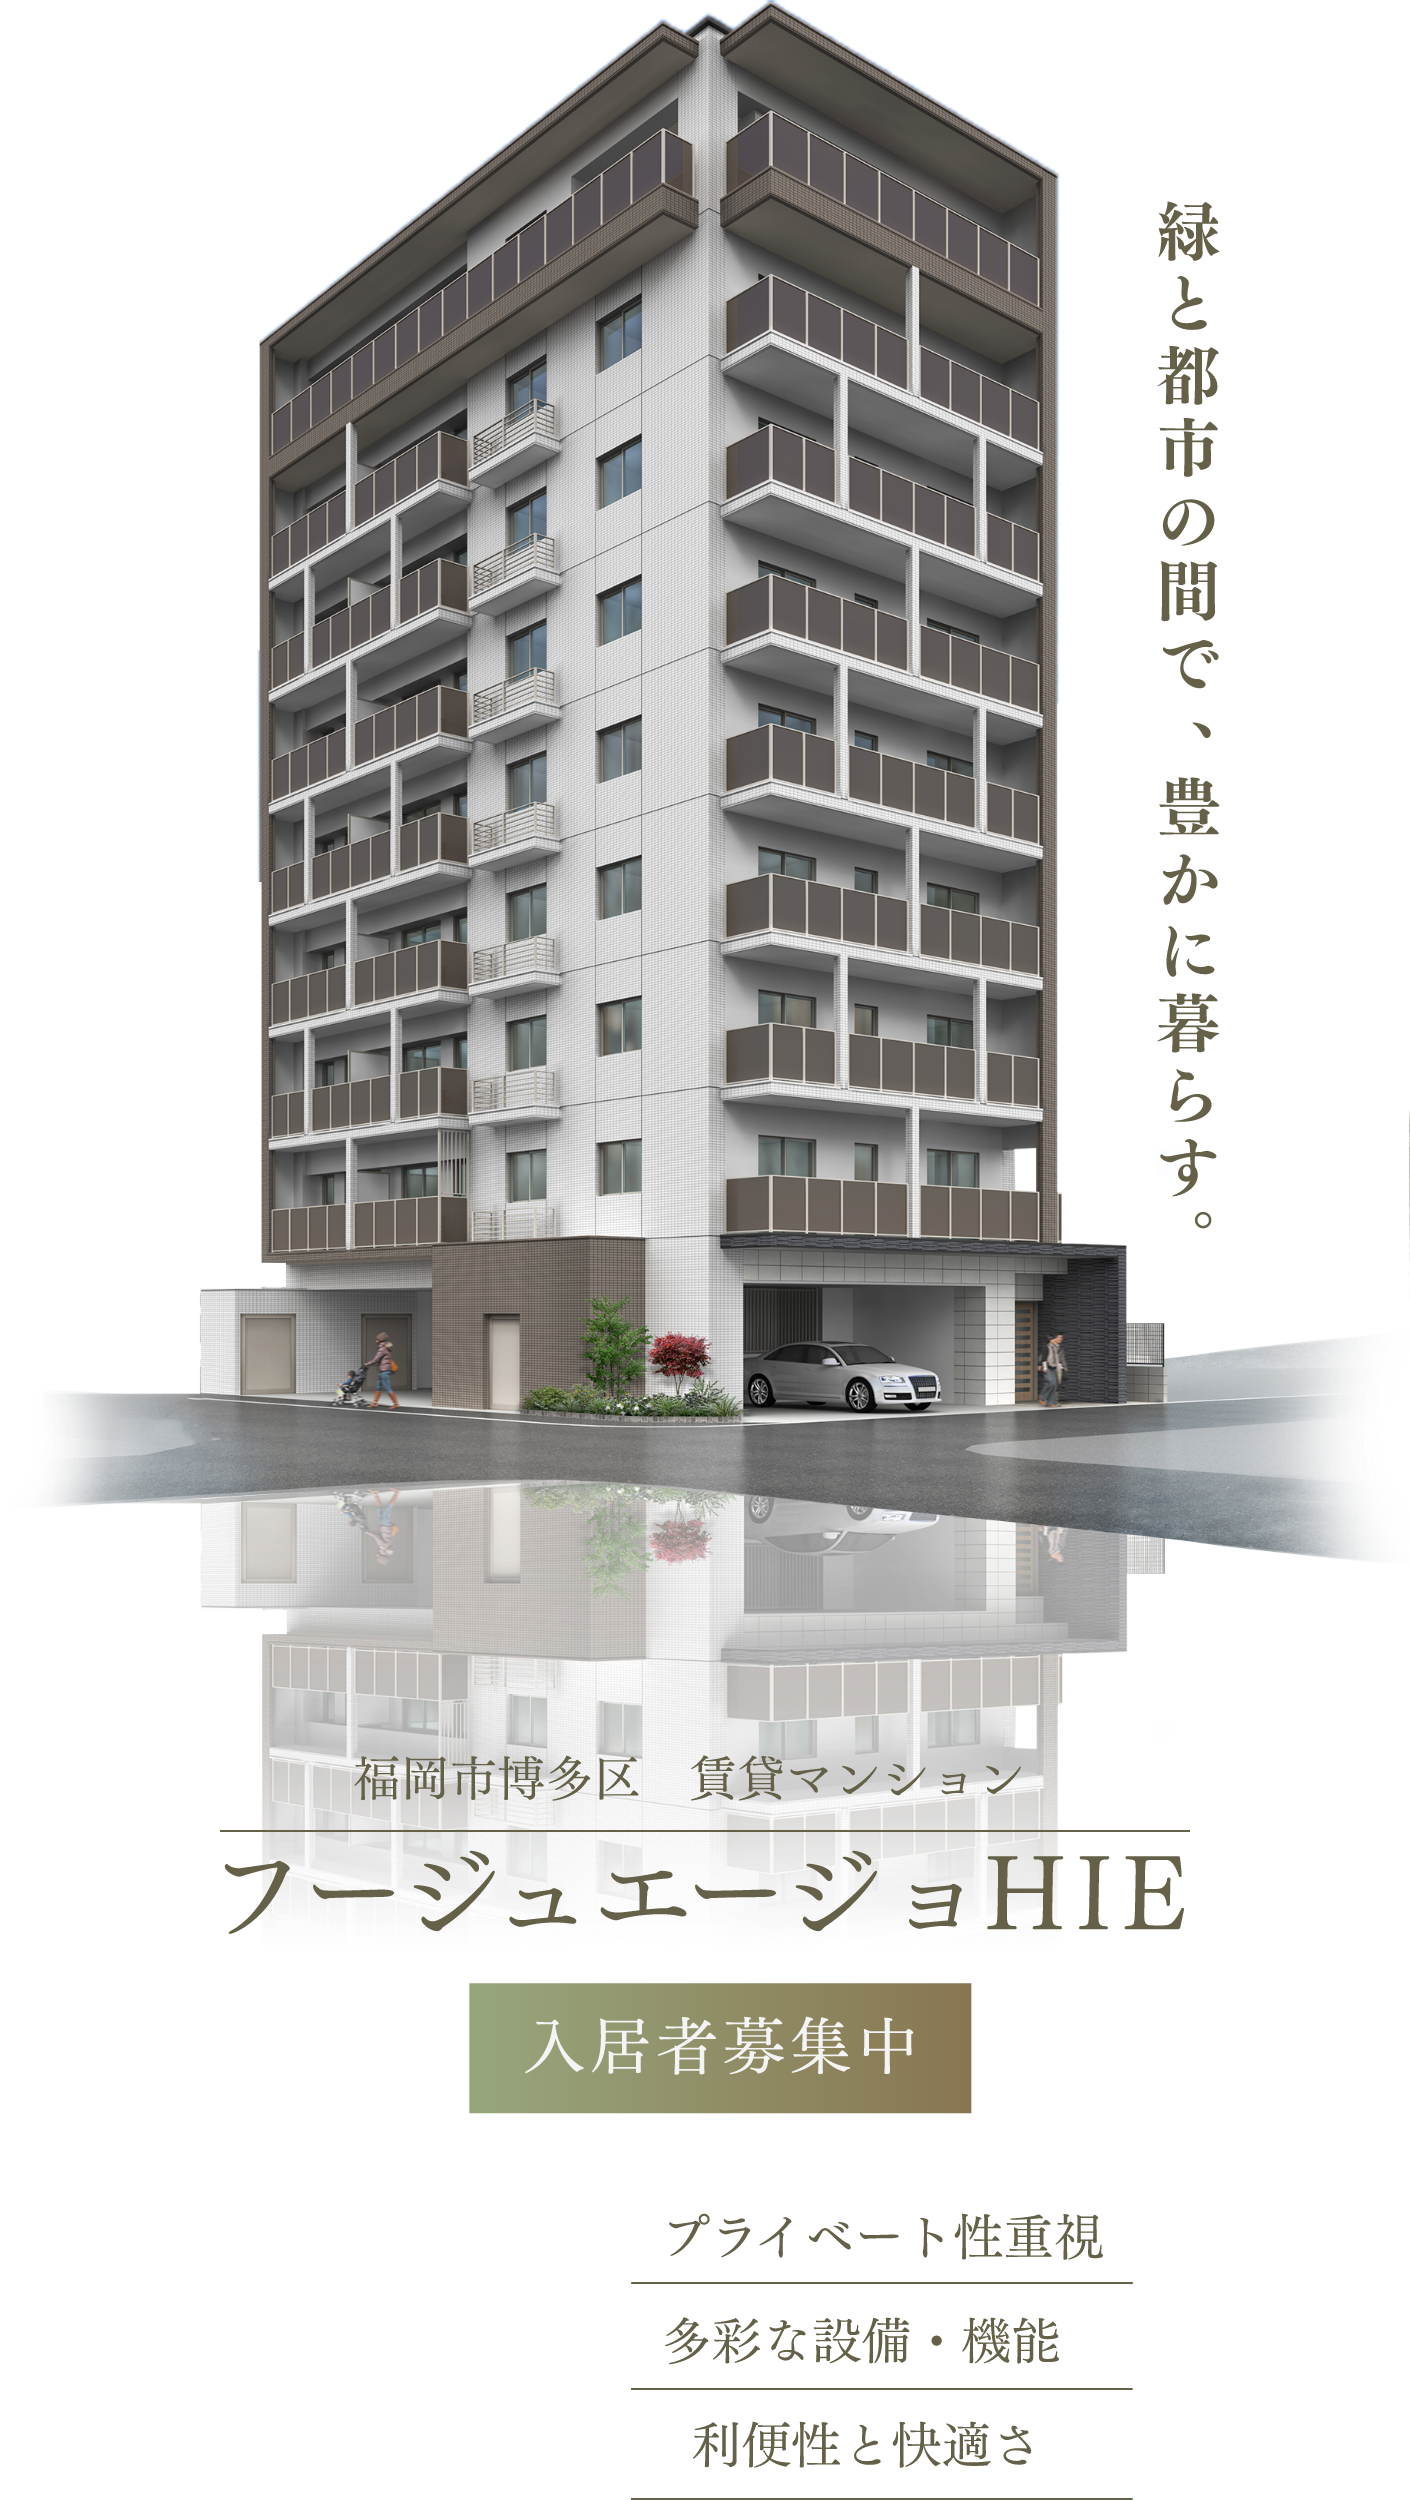 フージュエージョHIE　福岡市博多区 賃貸マンション 入居者募集中　プライベート性重視 多彩な設備・機能 利便性と快適さ　緑と都市の間で豊かに暮らす。